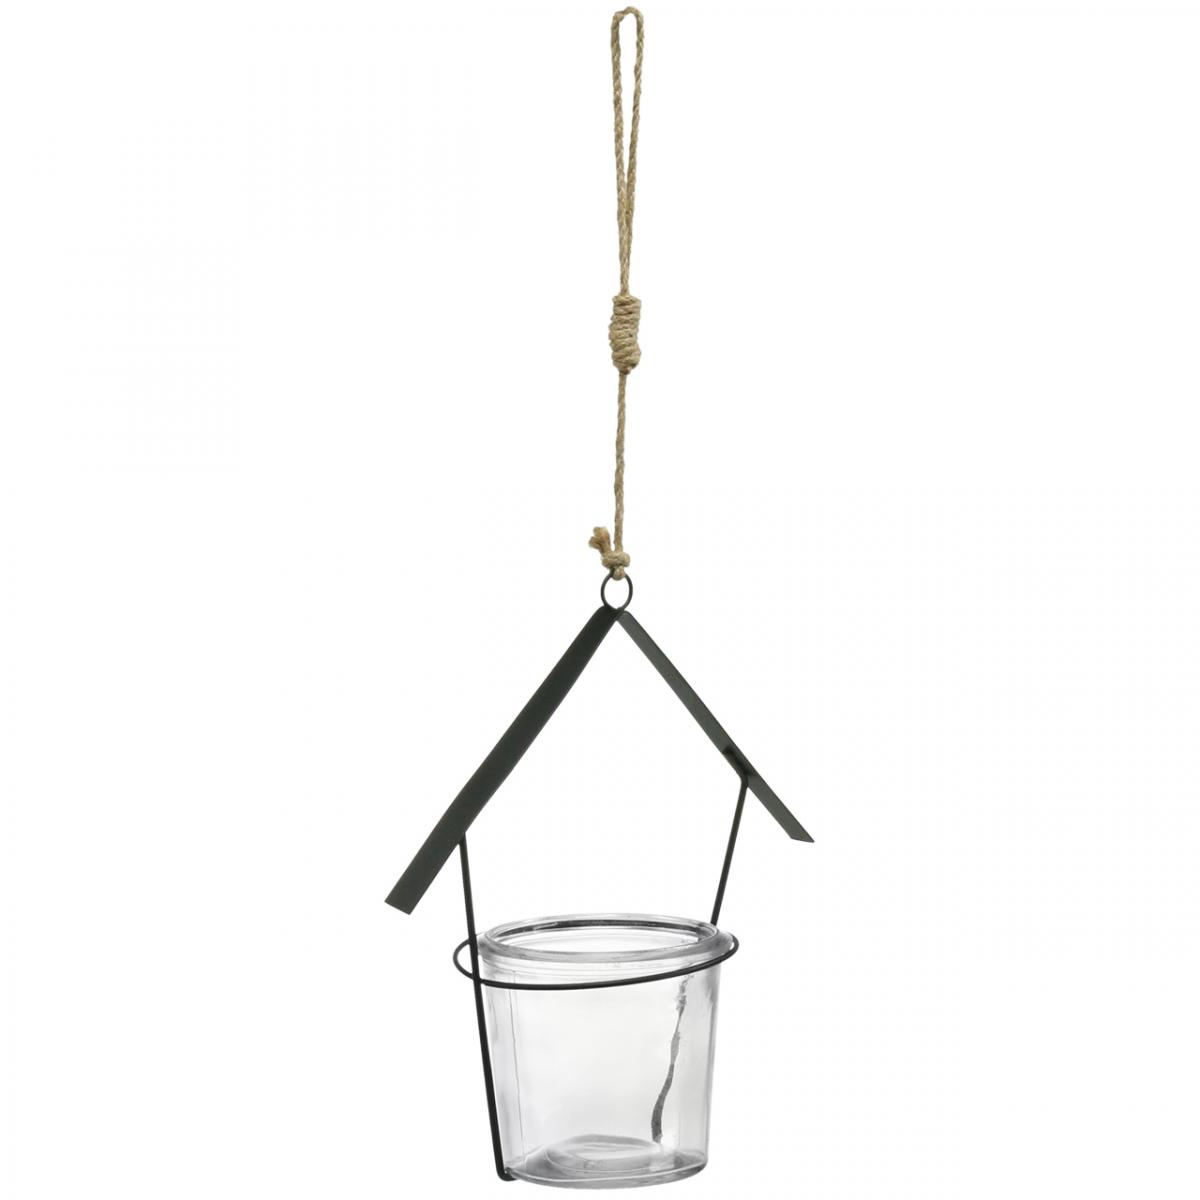 Windlicht Haus, Teelichthalter zum Hängen, Metalldeko, Glas  H21,5cm 2St-02645